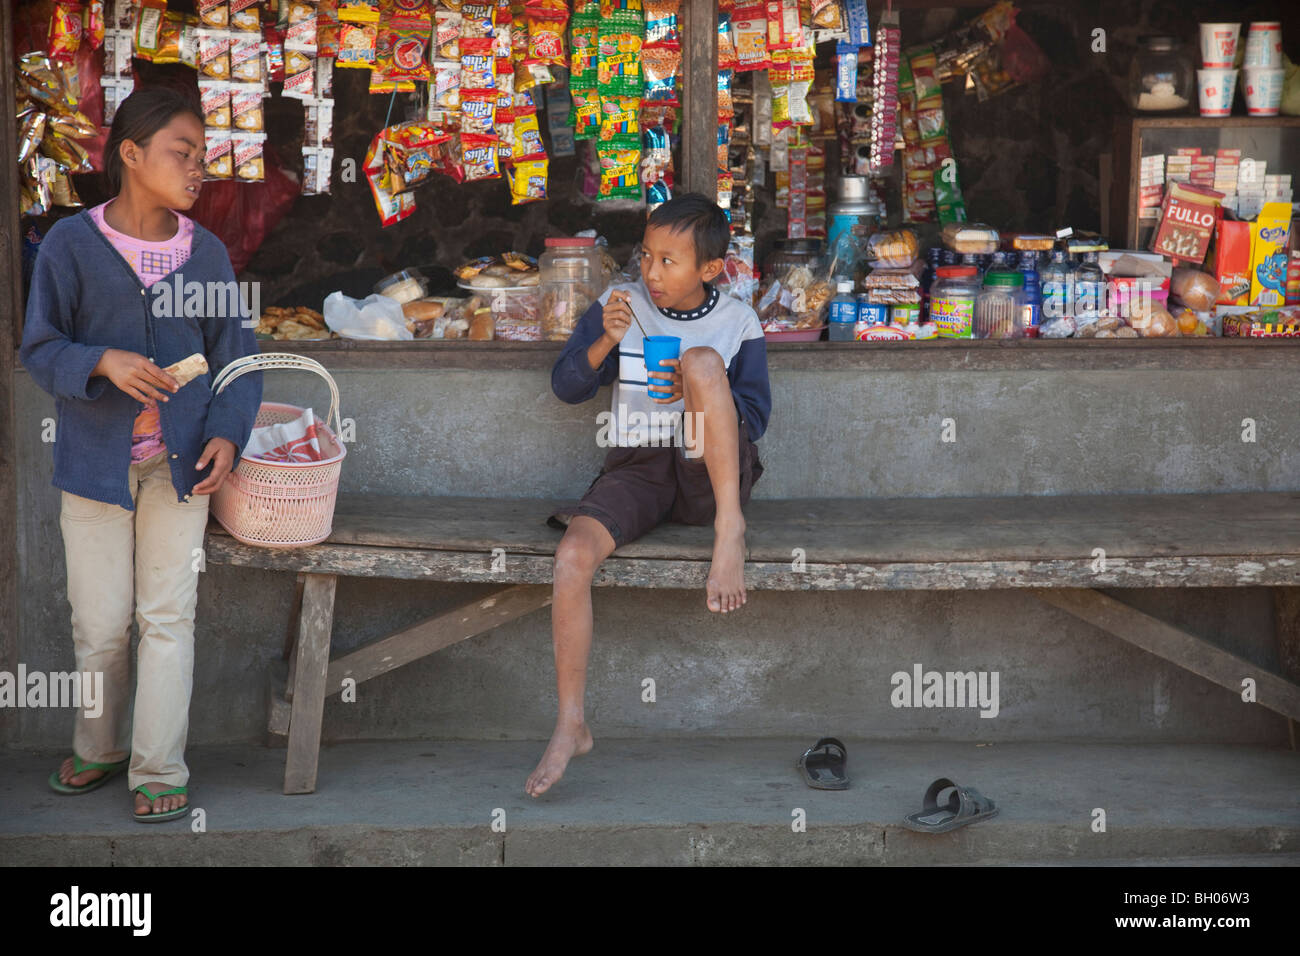 Un marché libre Bali boutique dispositions avec deux jeunes gens achètent des biens Banque D'Images